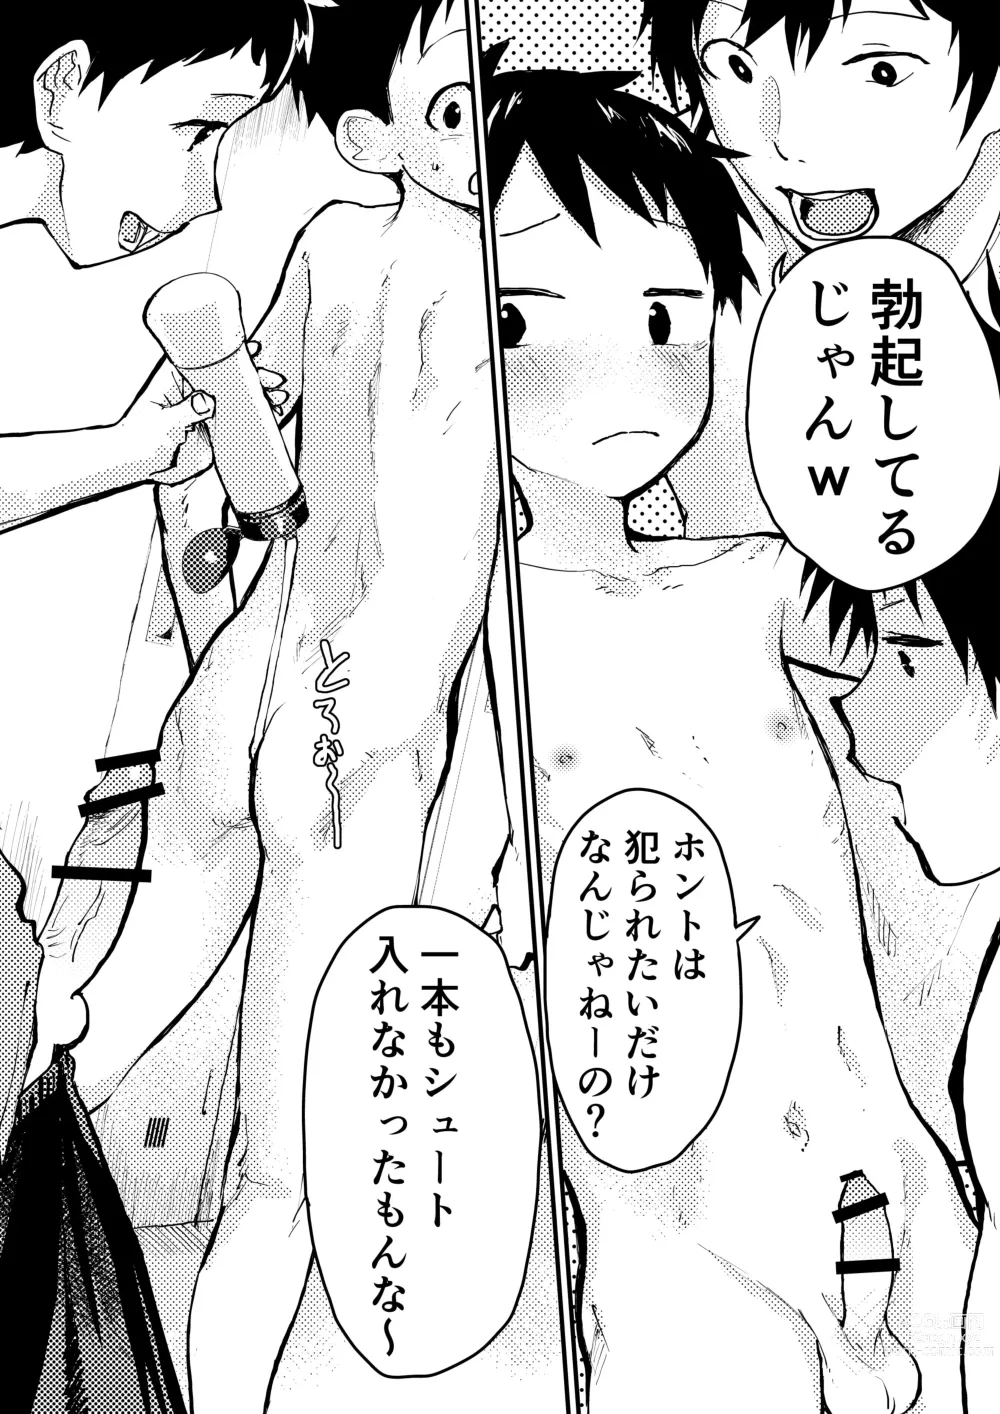 Page 7 of doujinshi Baske ga Heta dakara Shikata ga nai!